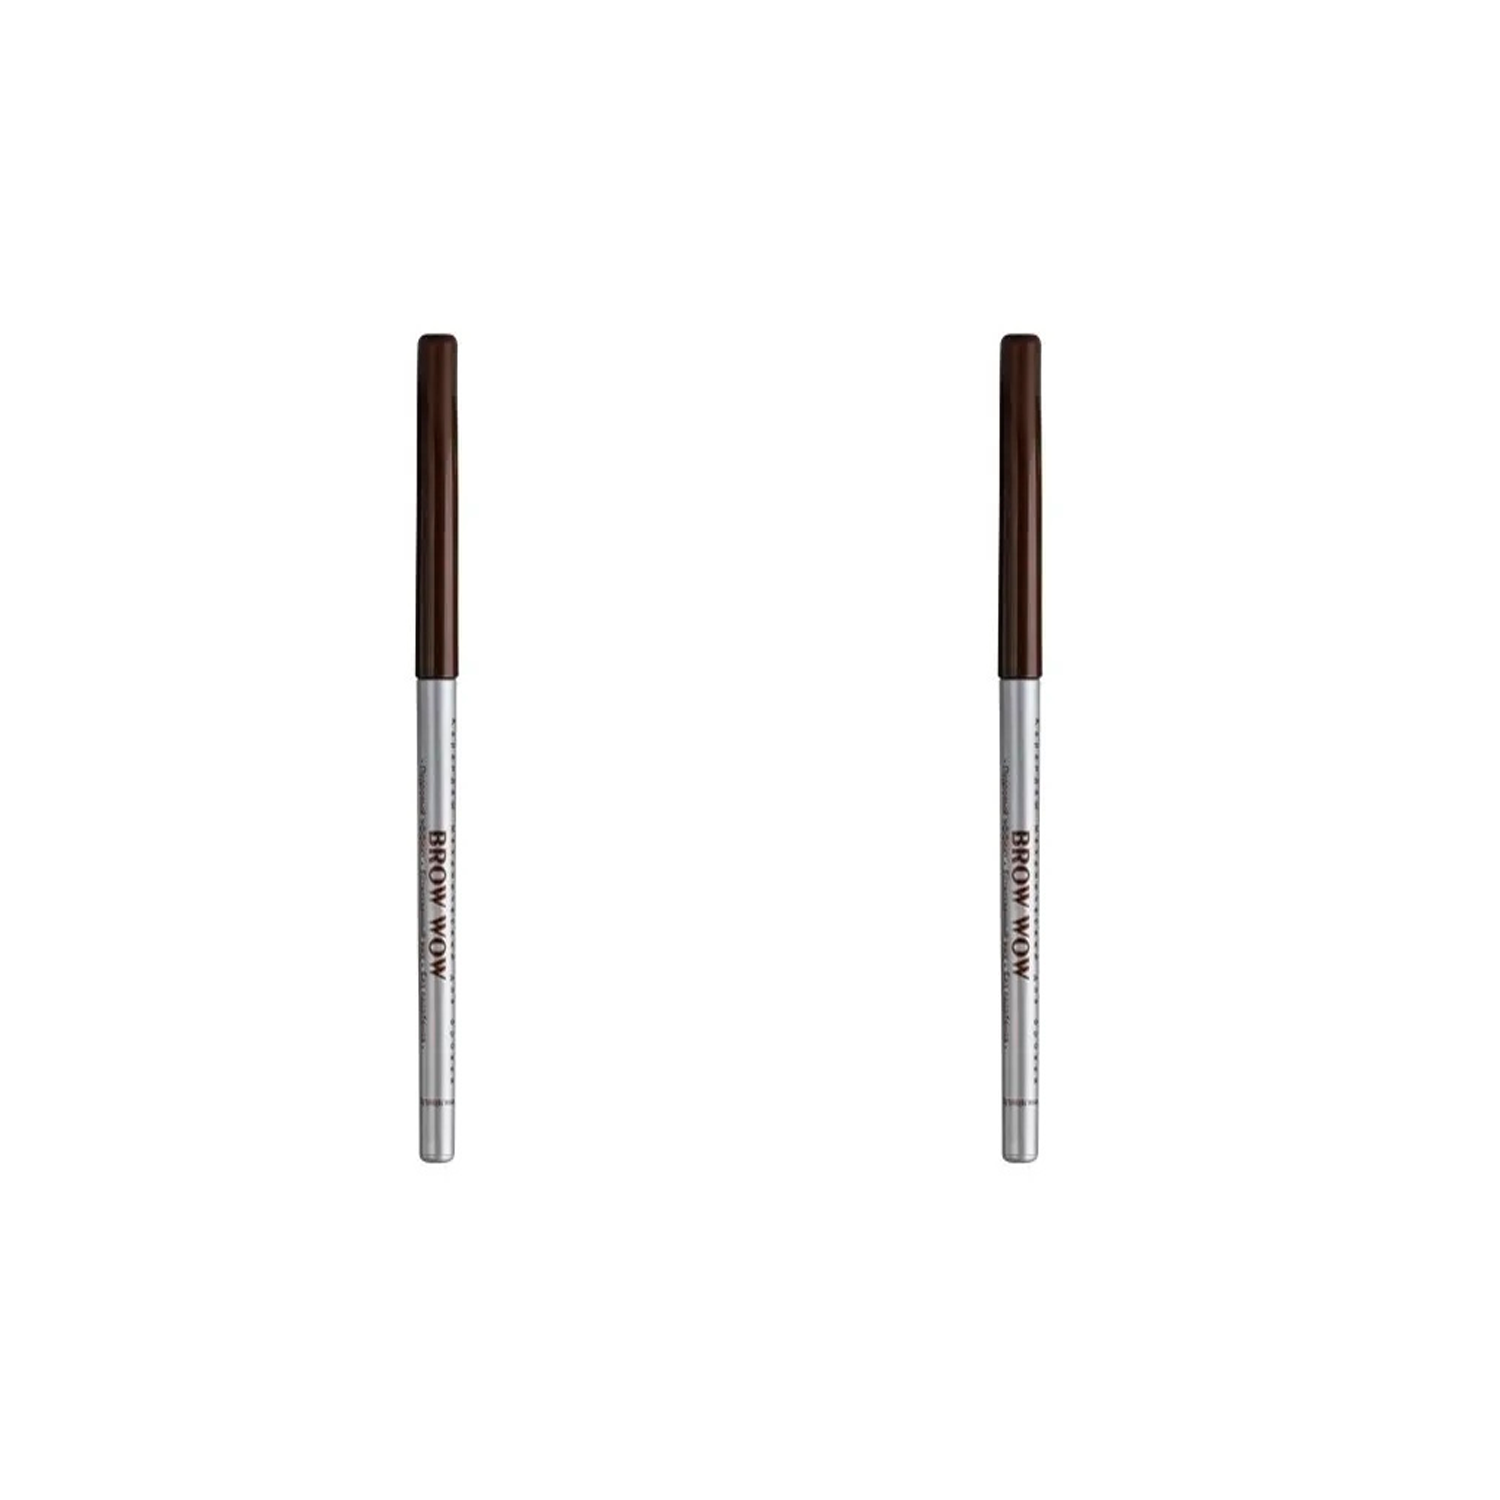 Карандаш механический для бровей Relouis тон 03, Medium Brown, 2 шт. карандаш для бровей luxvisage brow bar ультратонкий тон 305 medium brown 9 г